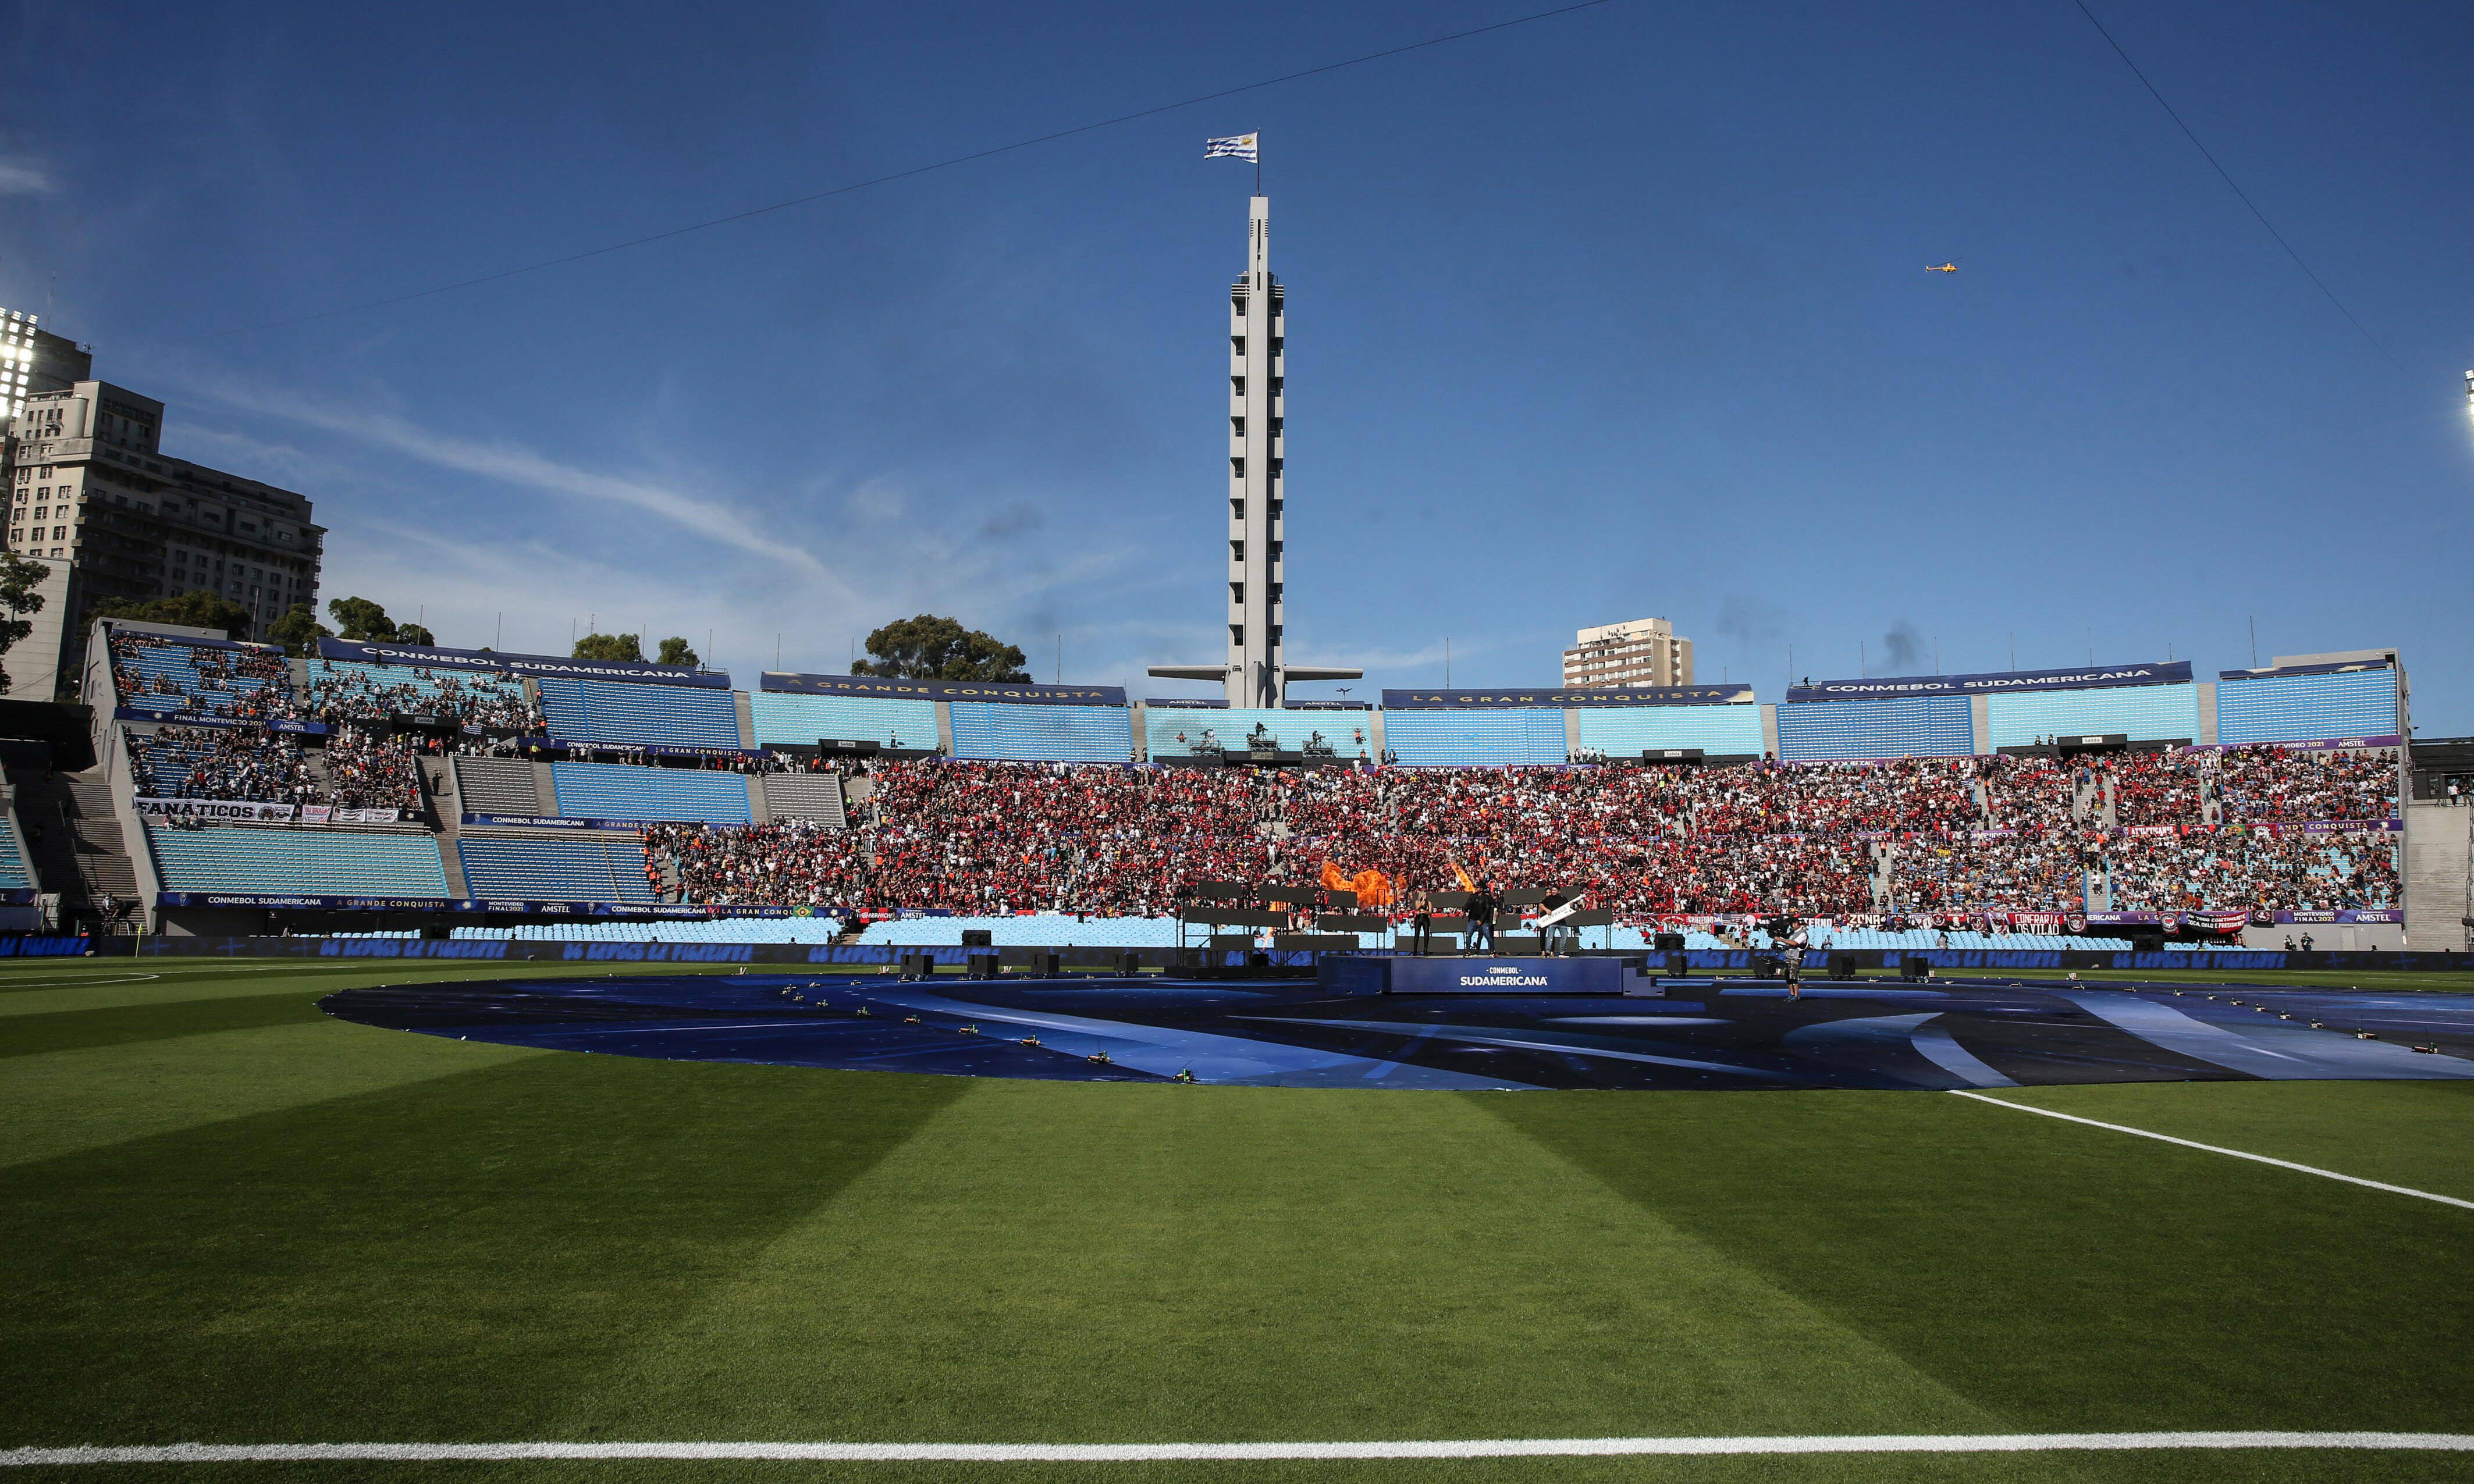 A general view of the Estadio Centenario in Montevideo, Uruguay in 2021